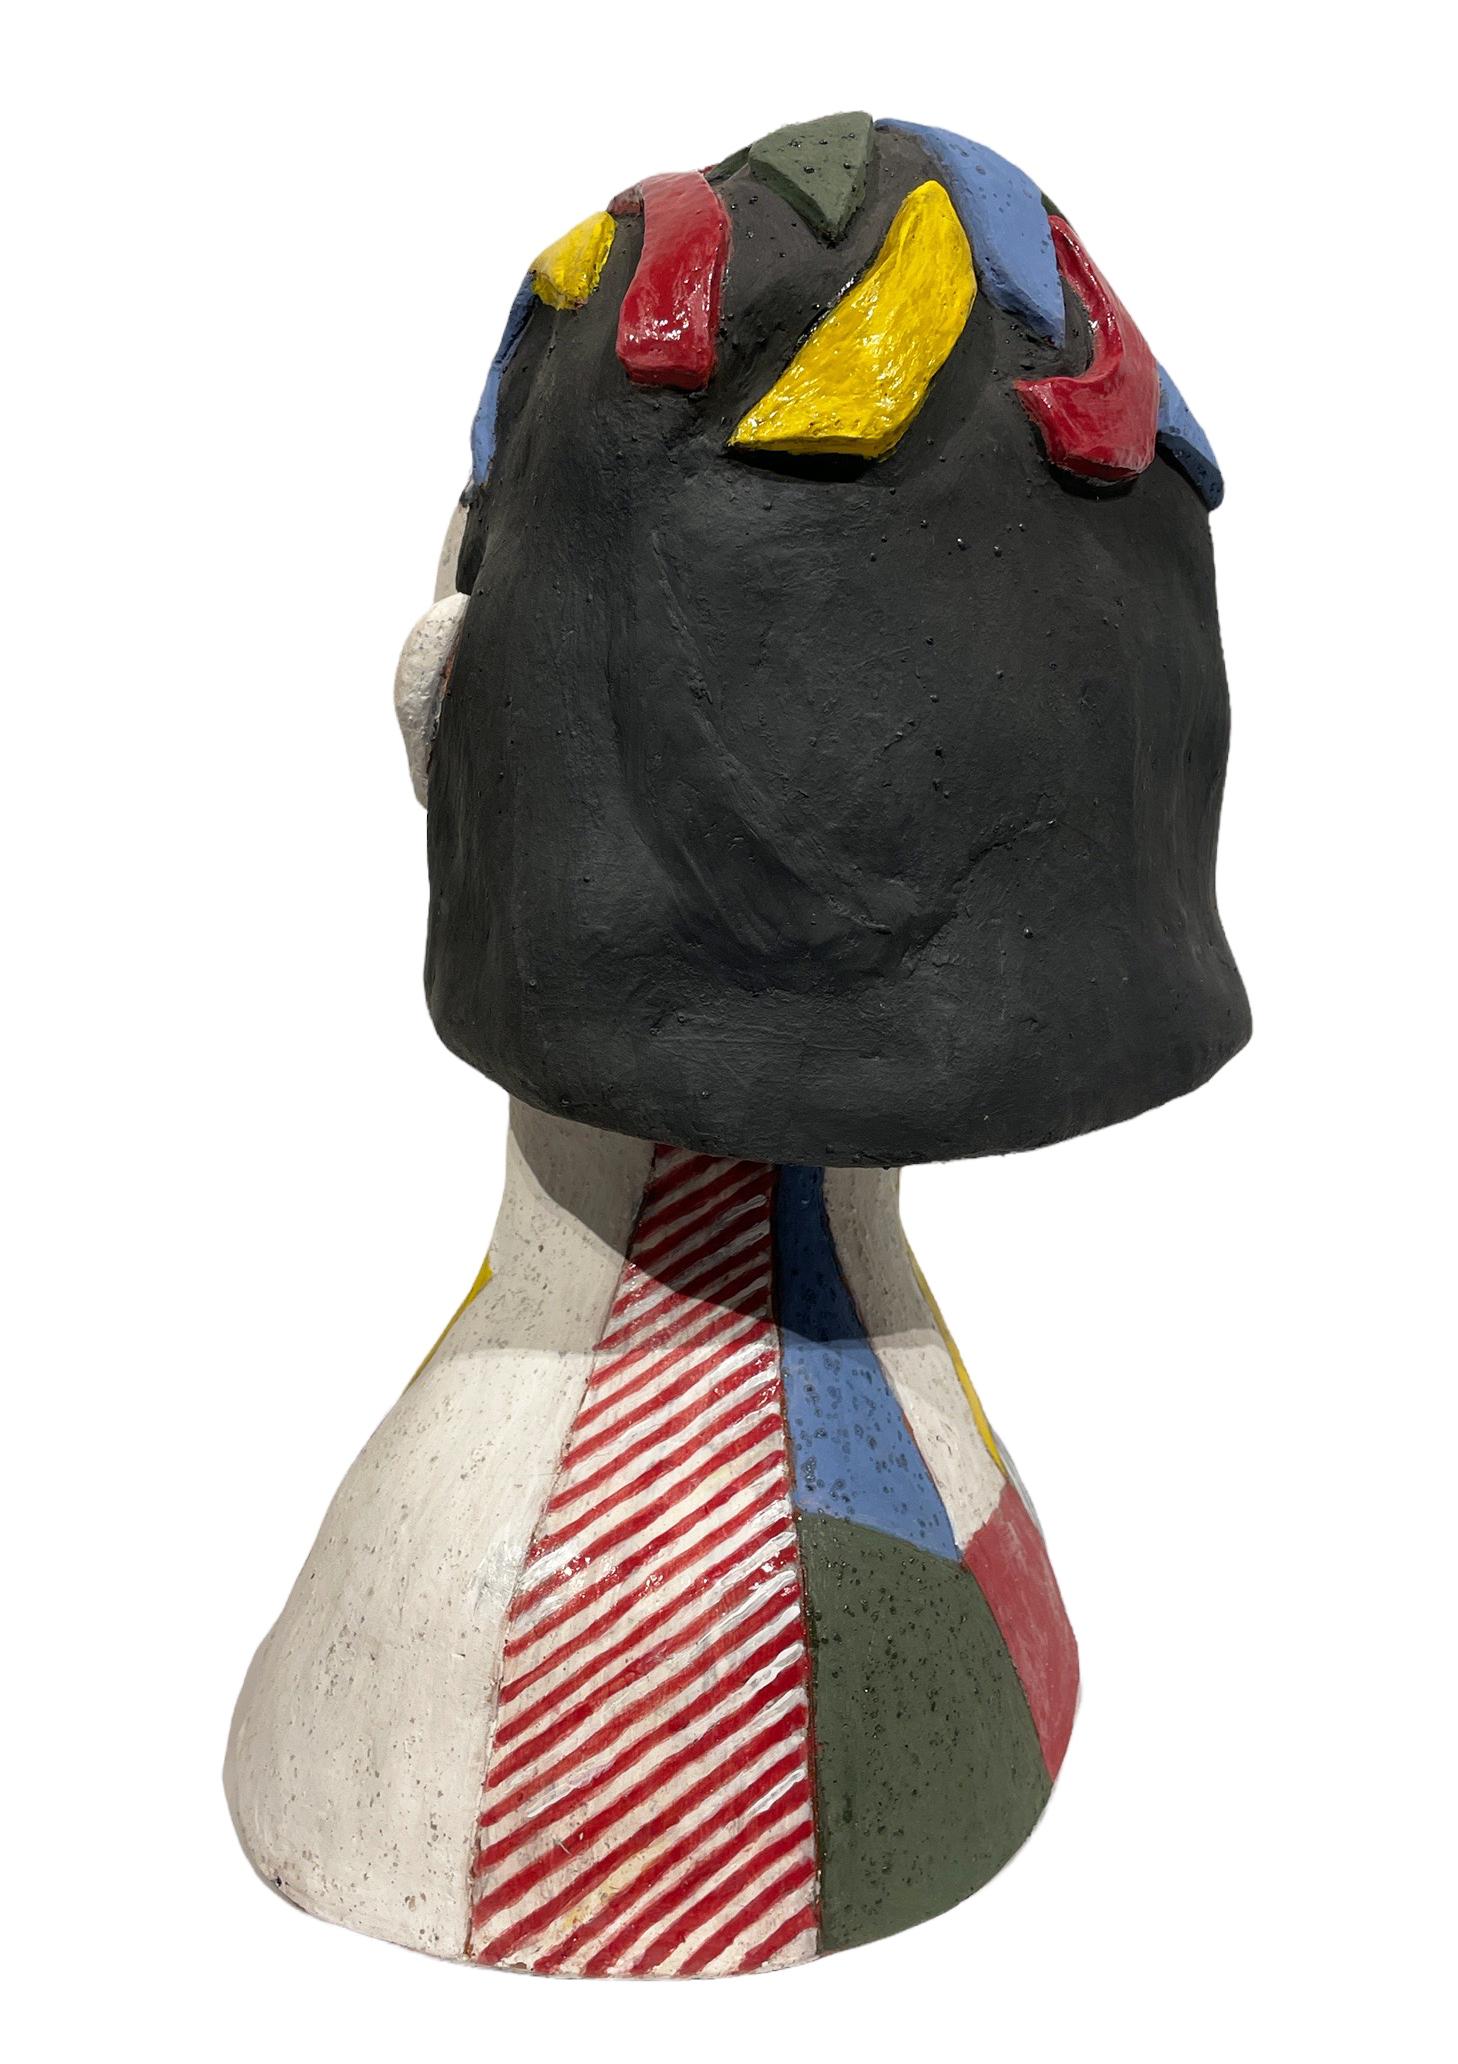 Lichtenstein's Portrait of a Woman - Ode to Roy Lichtenstein, Hand Built Ceramic - Beige Figurative Sculpture by Sandy Kaplan